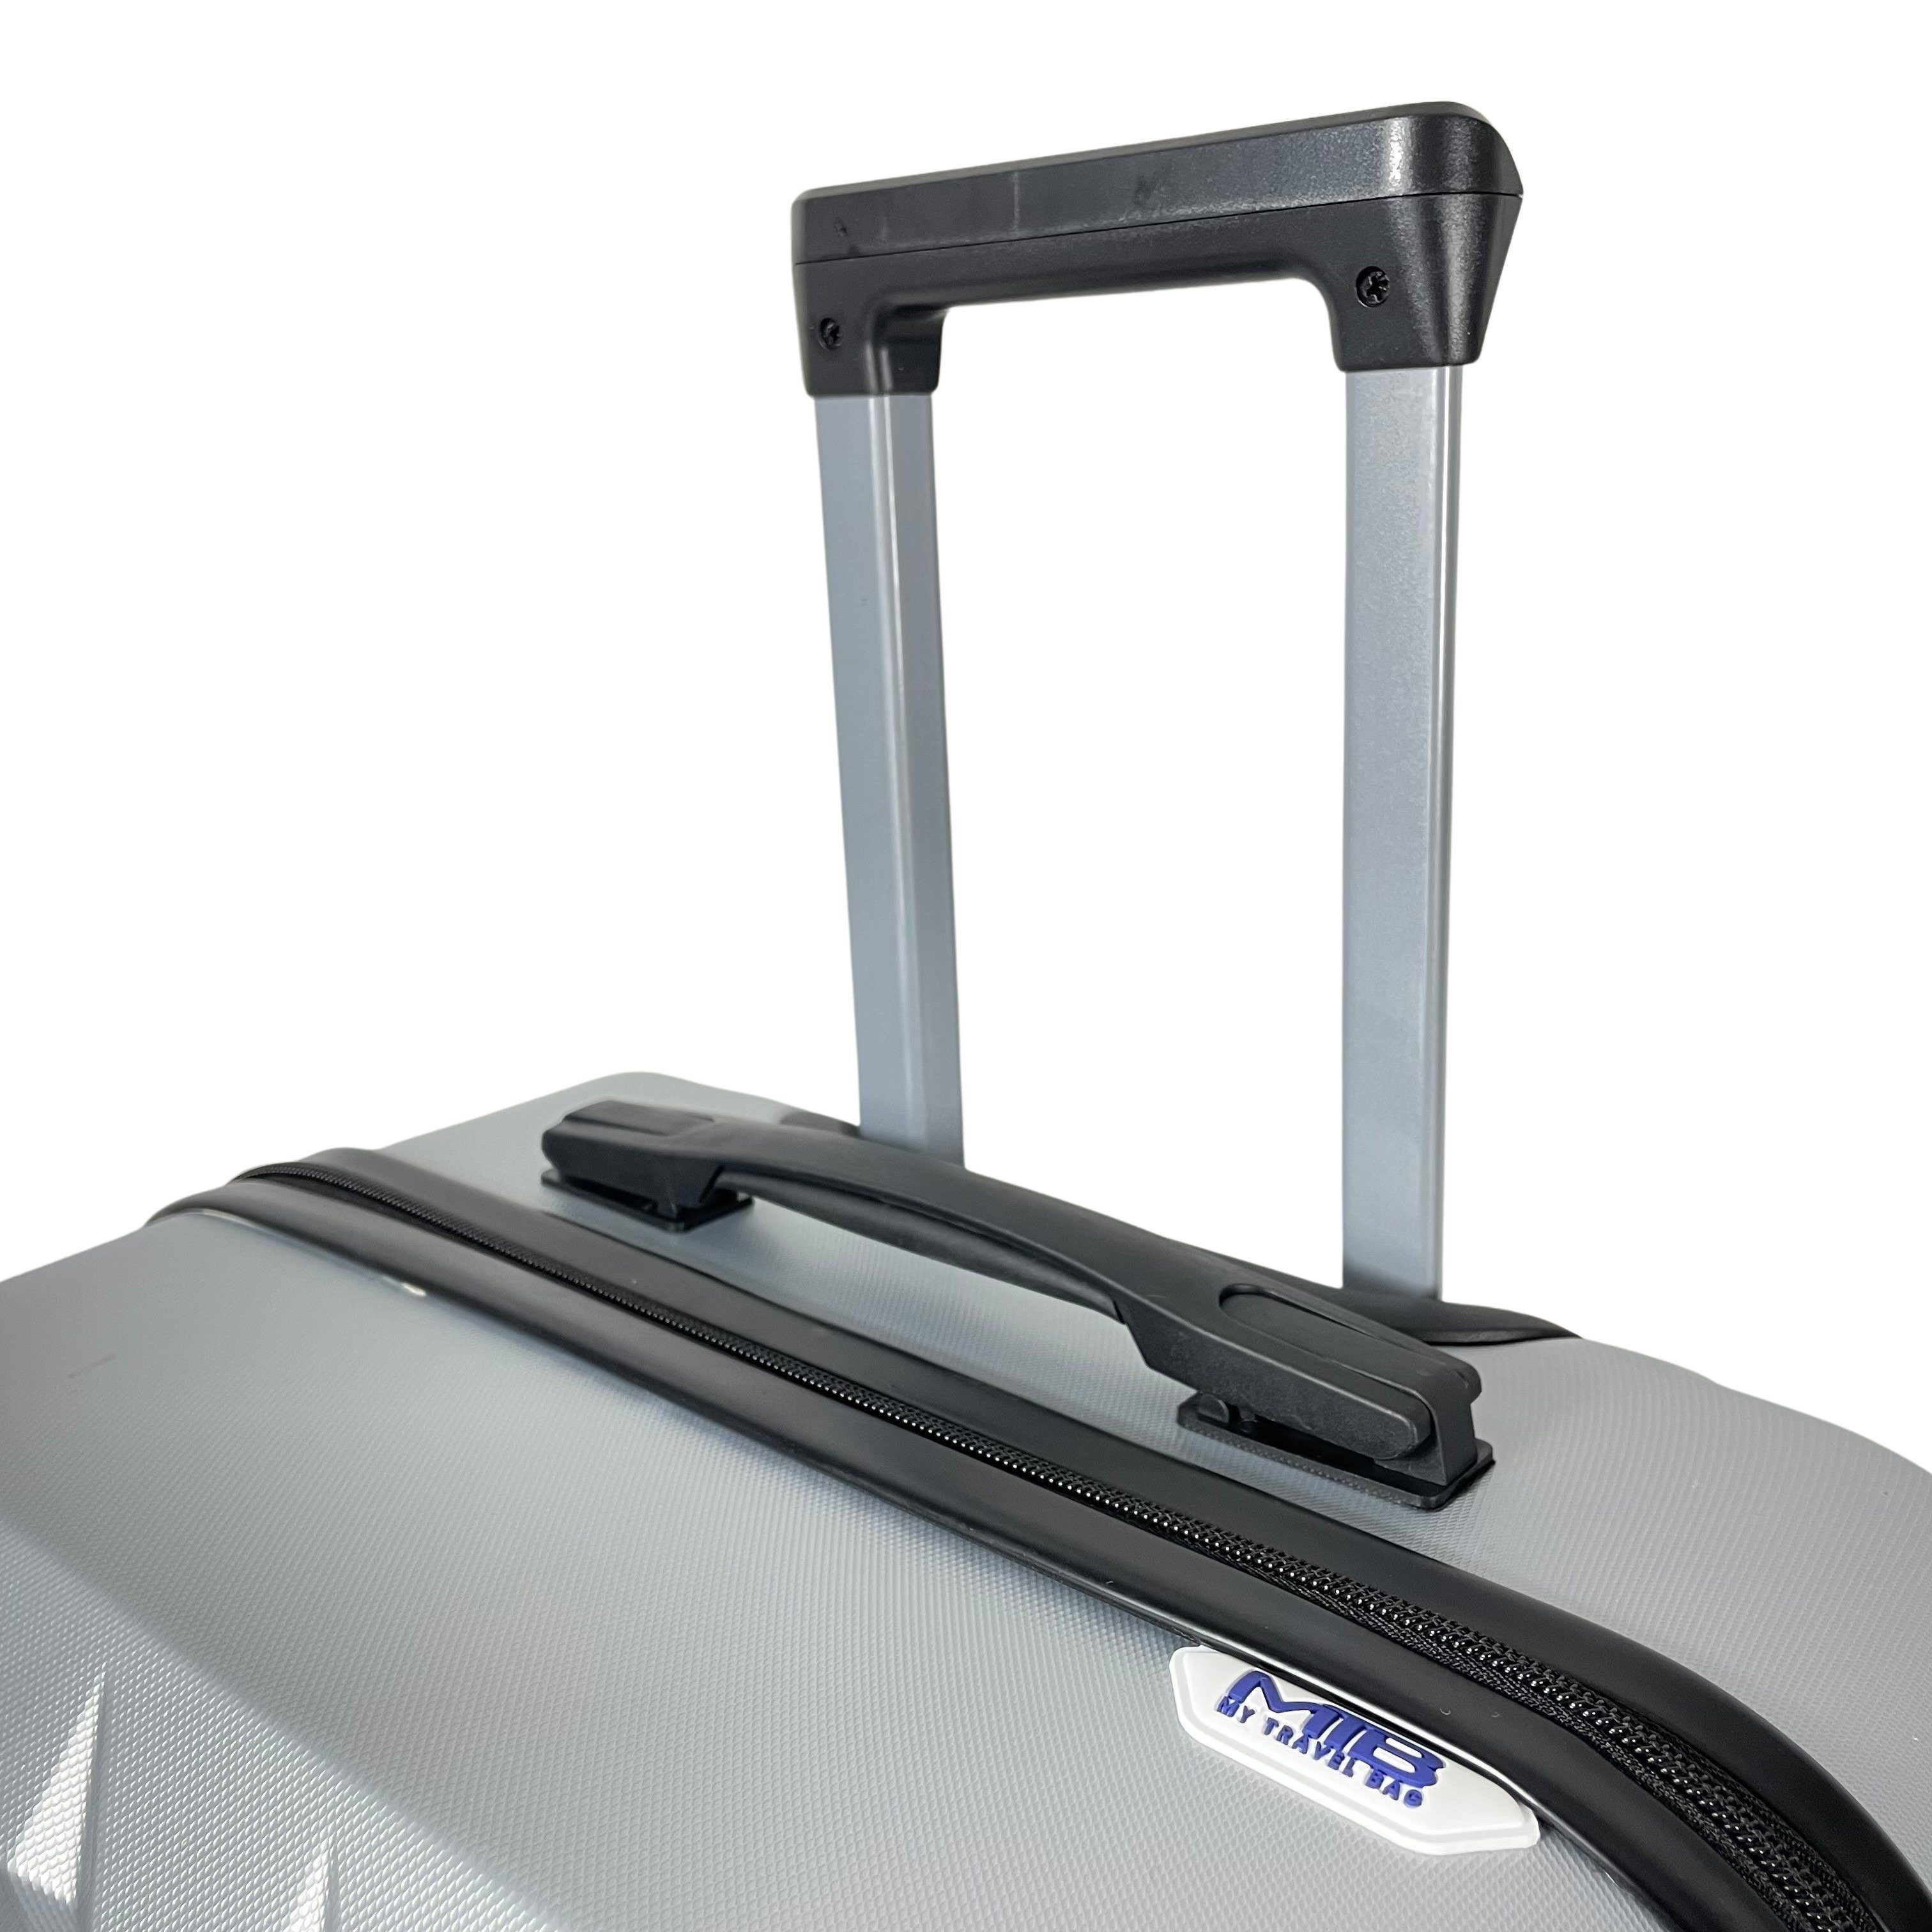 MTB Koffer Hartschalenkoffer ABS Reisekoffer Silber (Handgepäck-Mittel-Groß-Set)